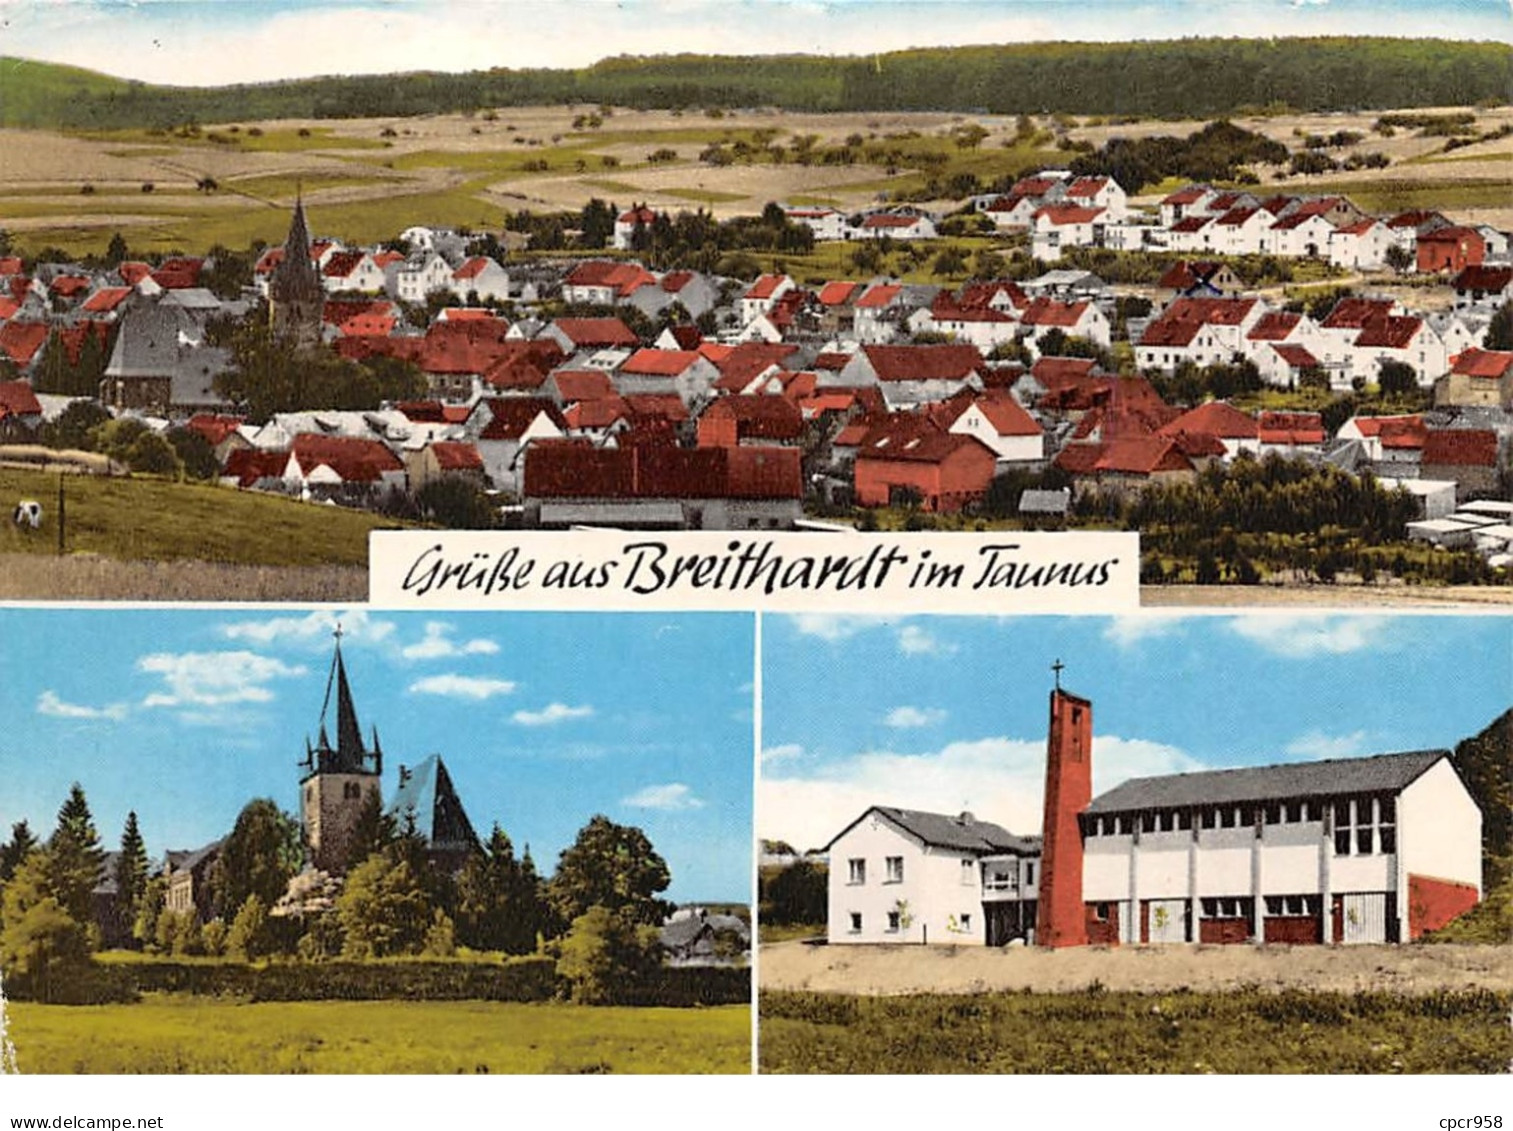 Allemagne - N°63513 - Hohnenstein-Breithardt Im Taunus - Gruss Aud Breithardt Im Taunus - CPSM - Hohnstein (Saechs. Schweiz)